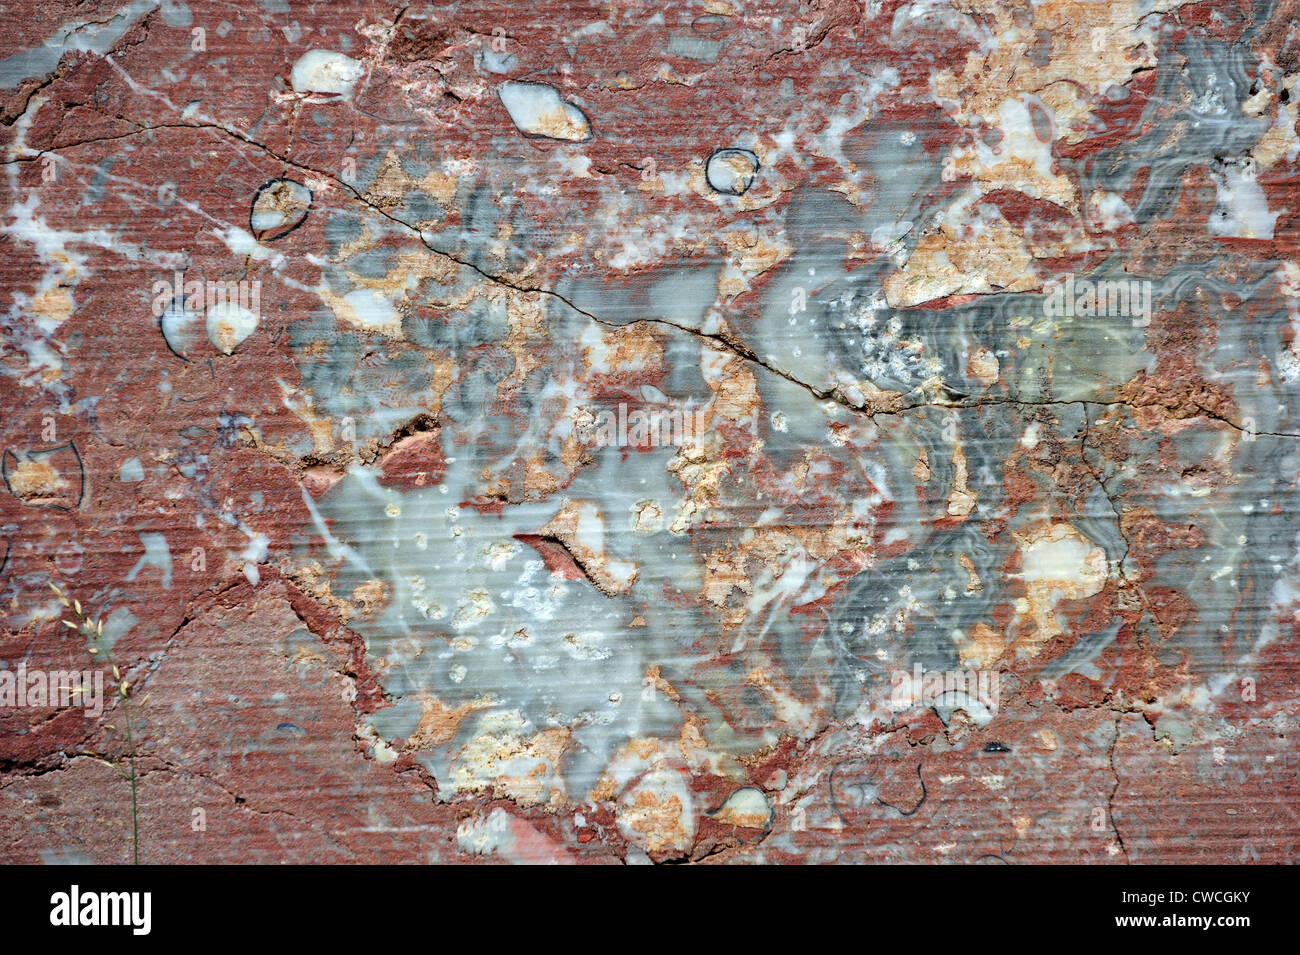 Nahaufnahme von rotem Marmor im Steinbruch Carrière de Beauchâteau in Senzeille in den belgischen Ardennen, Belgien Stockfoto